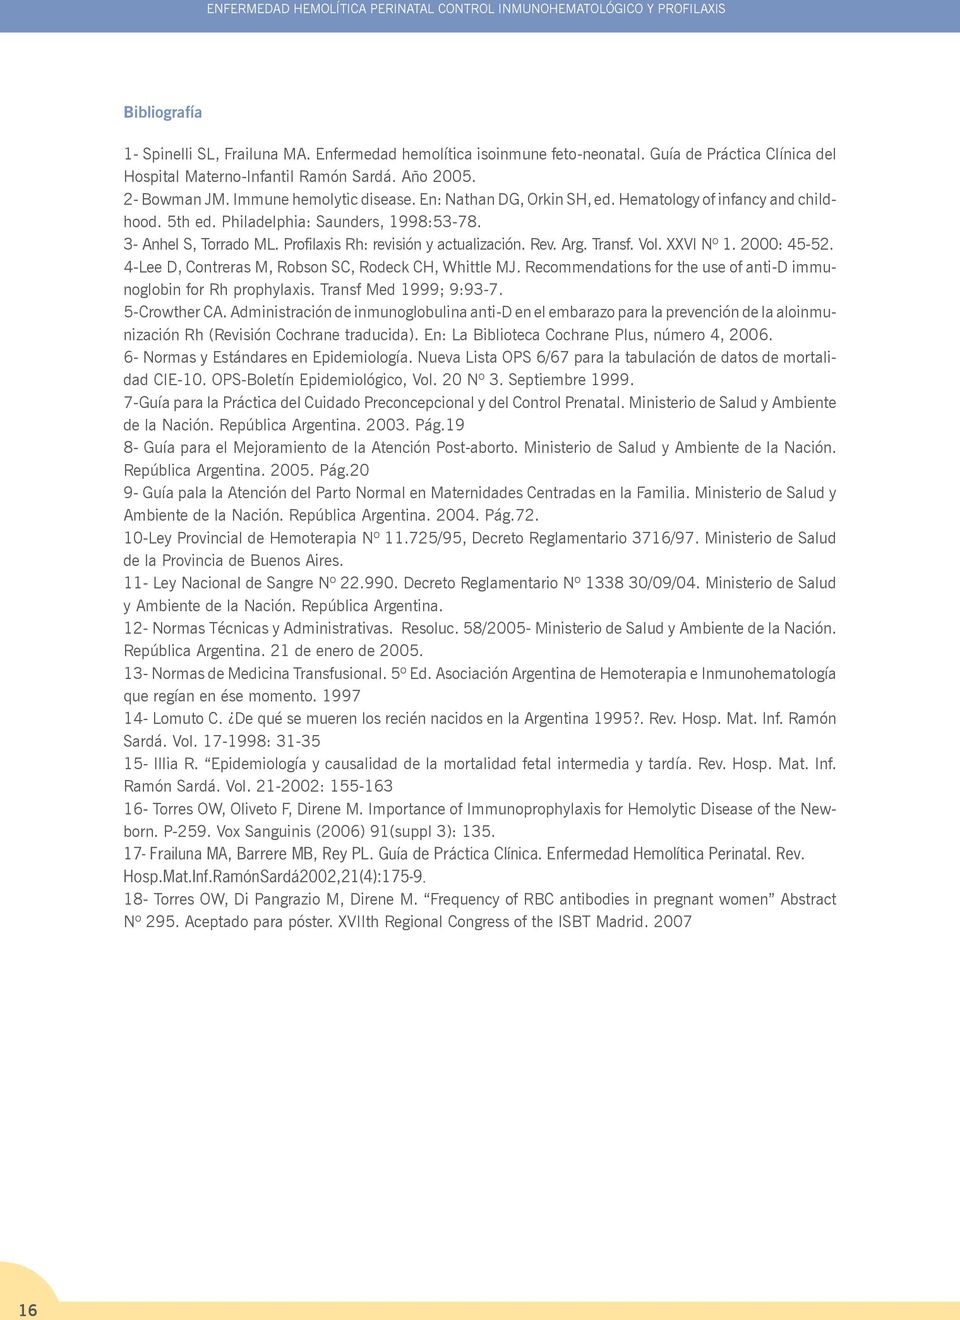 Philadelphia: Saunders, 1998:53-78. 3- Anhel S, Torrado ML. Profilaxis Rh: revisión y actualización. Rev. Arg. Transf. Vol. XXVI Nº 1. 2000: 45-52.